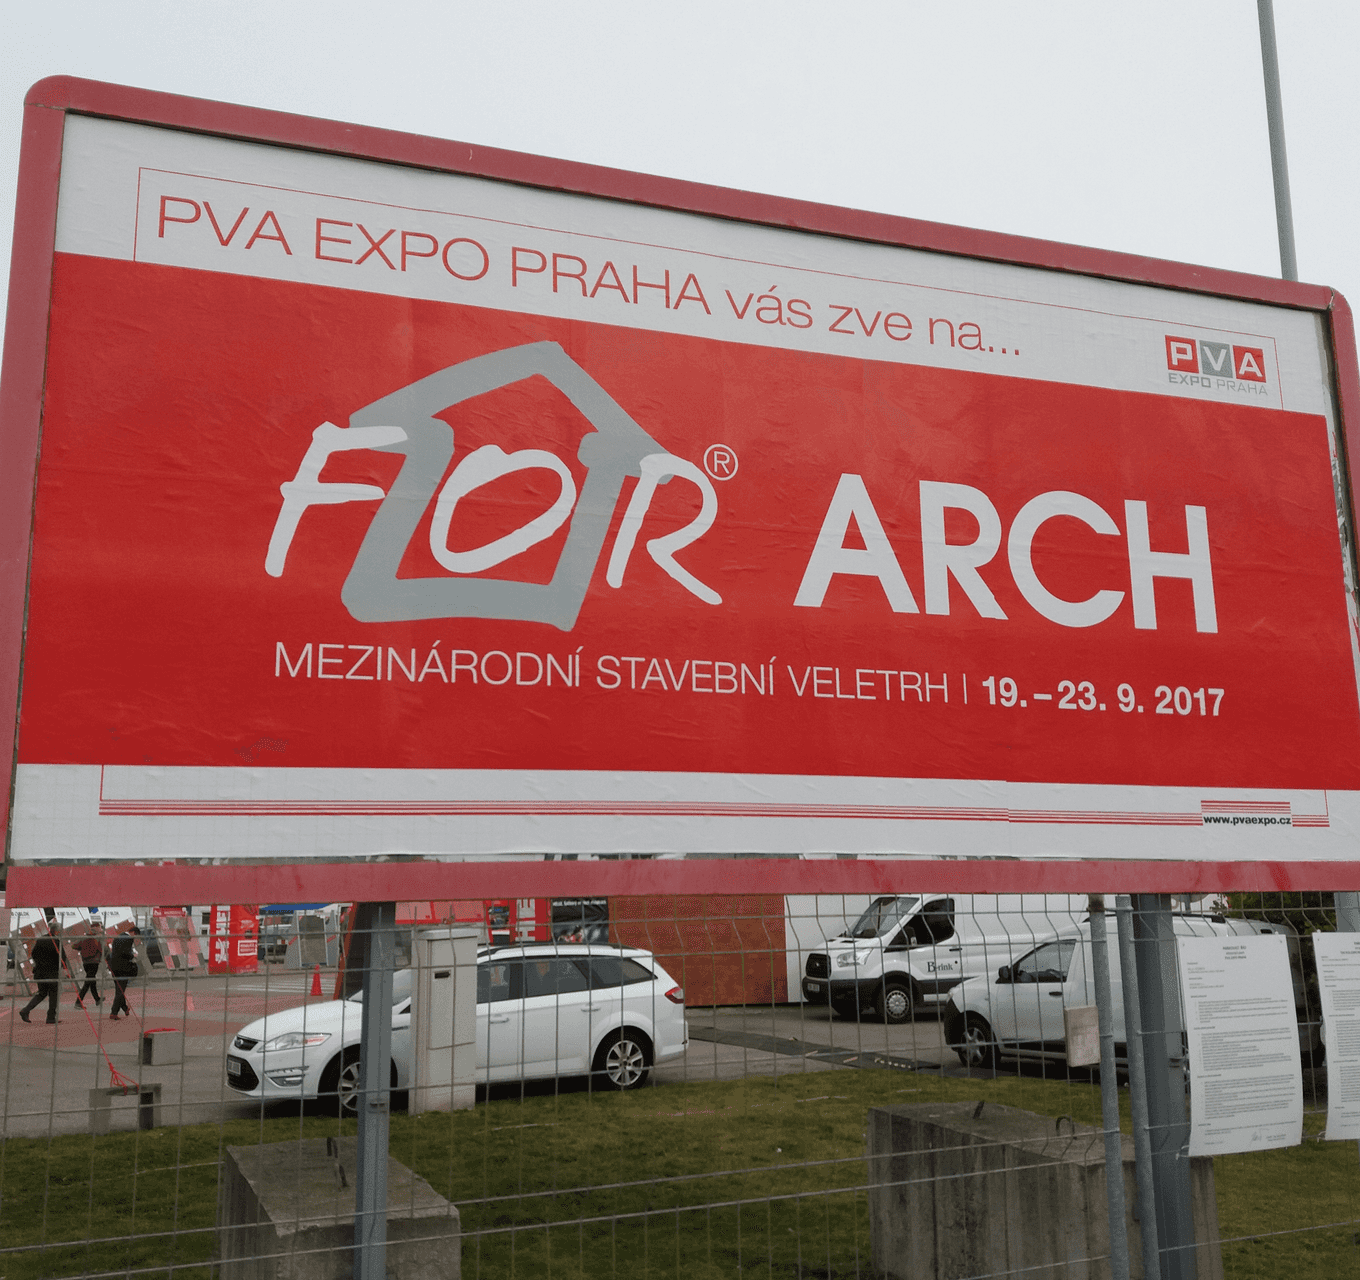 Mezinárodní stavební veletrh FOR ARCH obrazem